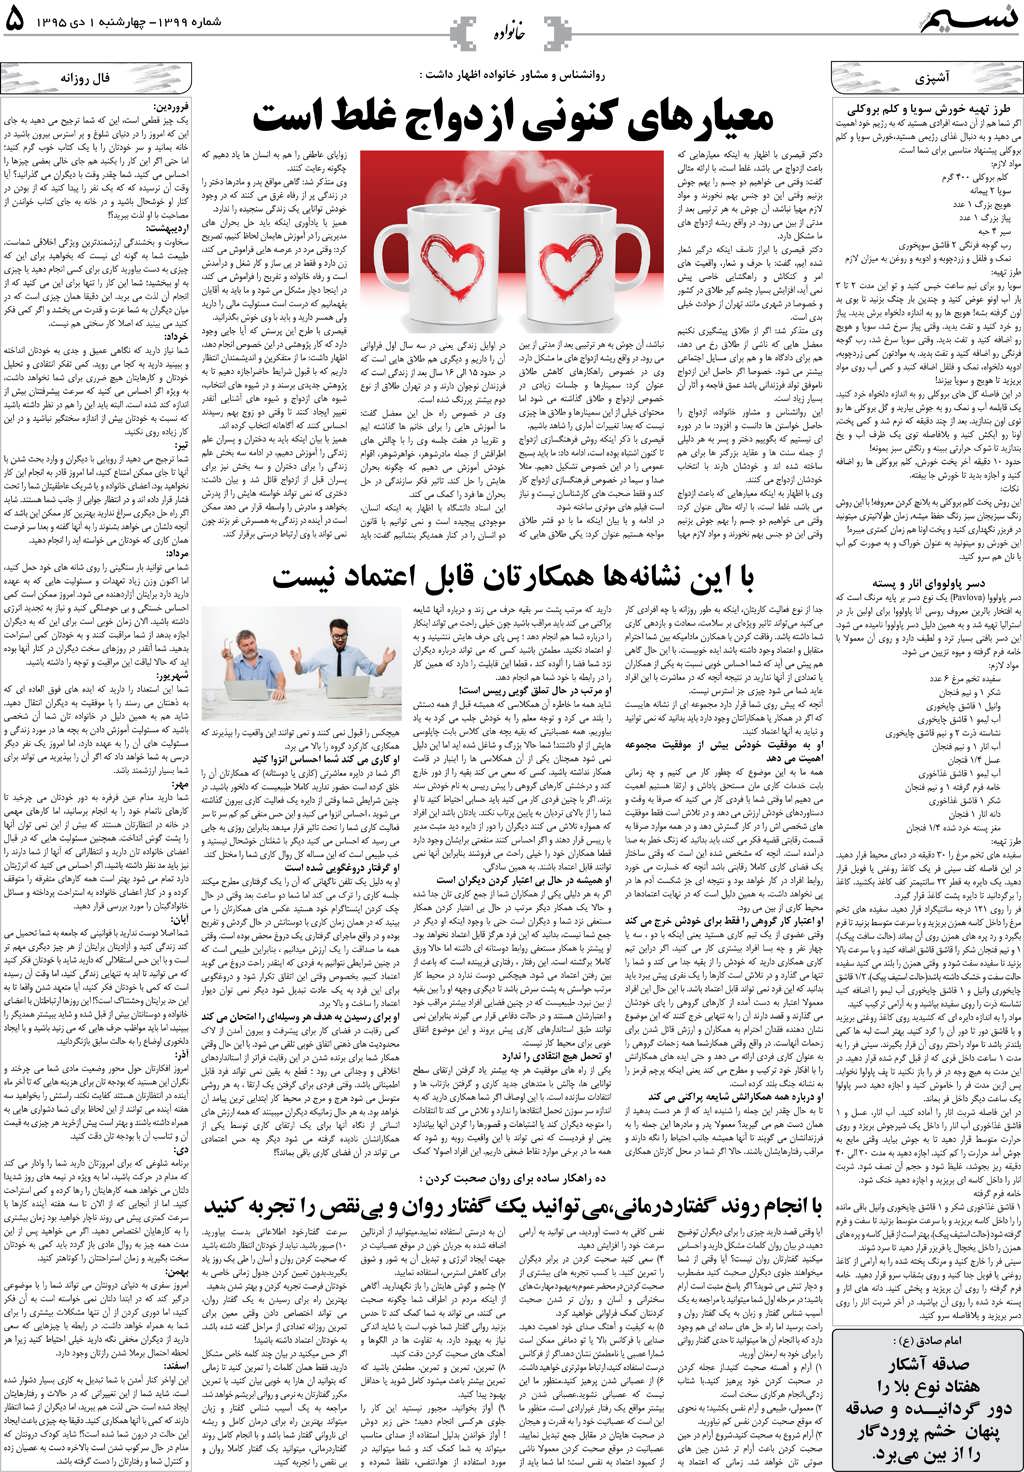 صفحه خانواده روزنامه نسیم شماره 1399